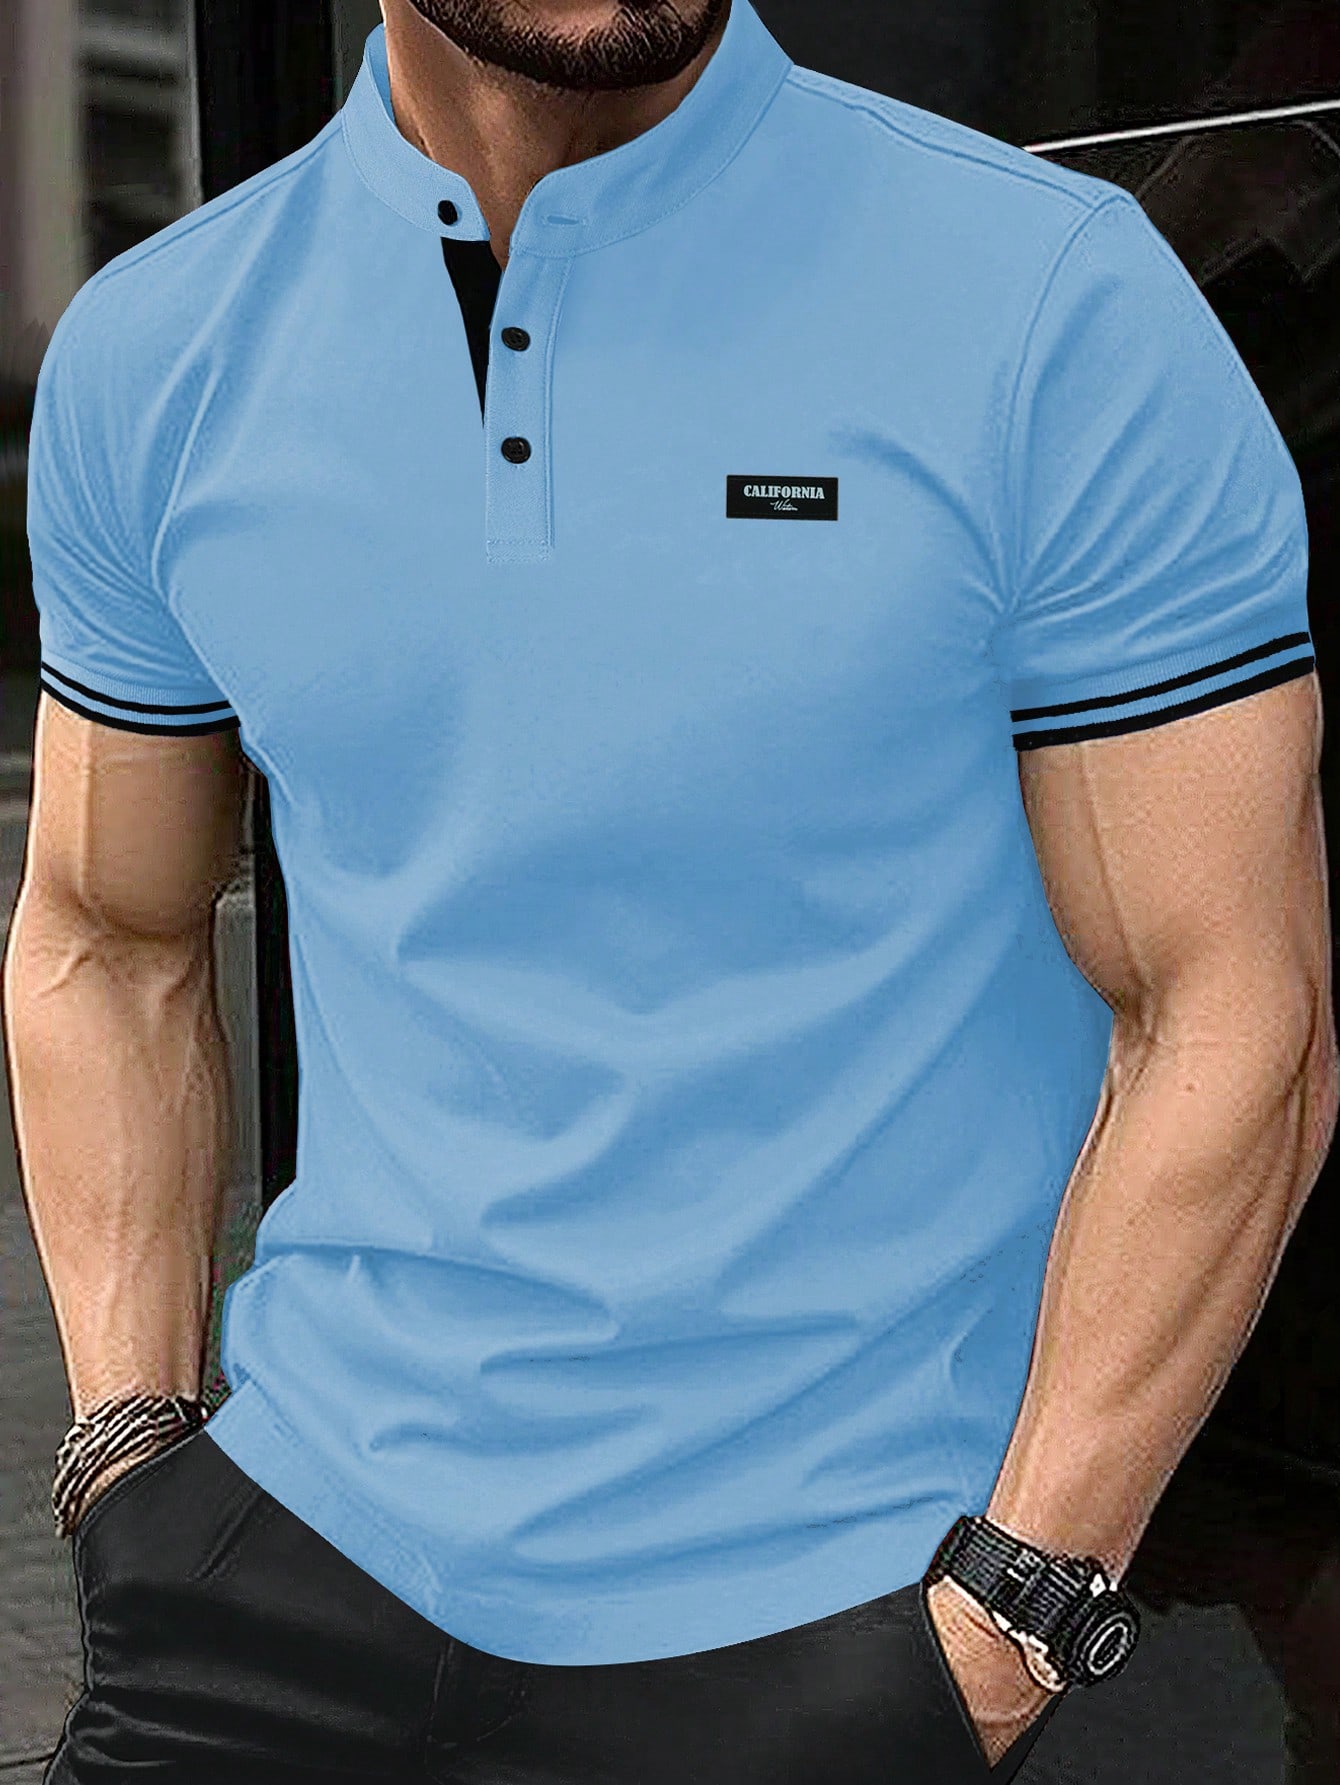 Мужская рубашка-поло с коротким рукавом и планкой на пуговицах Manfinity Homme, синий мужская рубашка поло контрастного цвета manfinity homme хаки